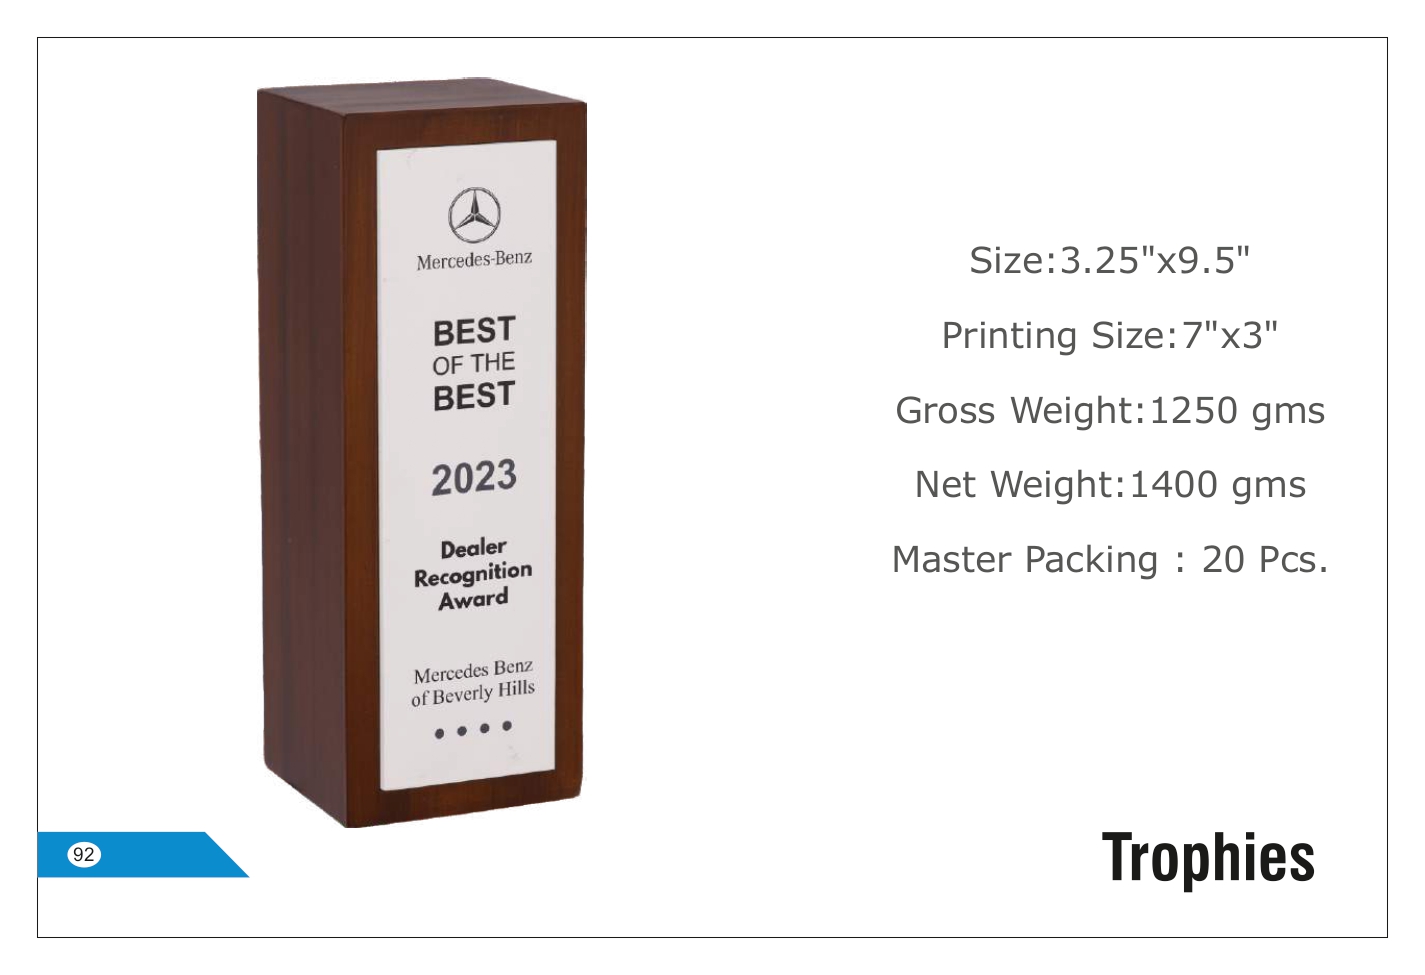 Premium Trophy with Elegant Design